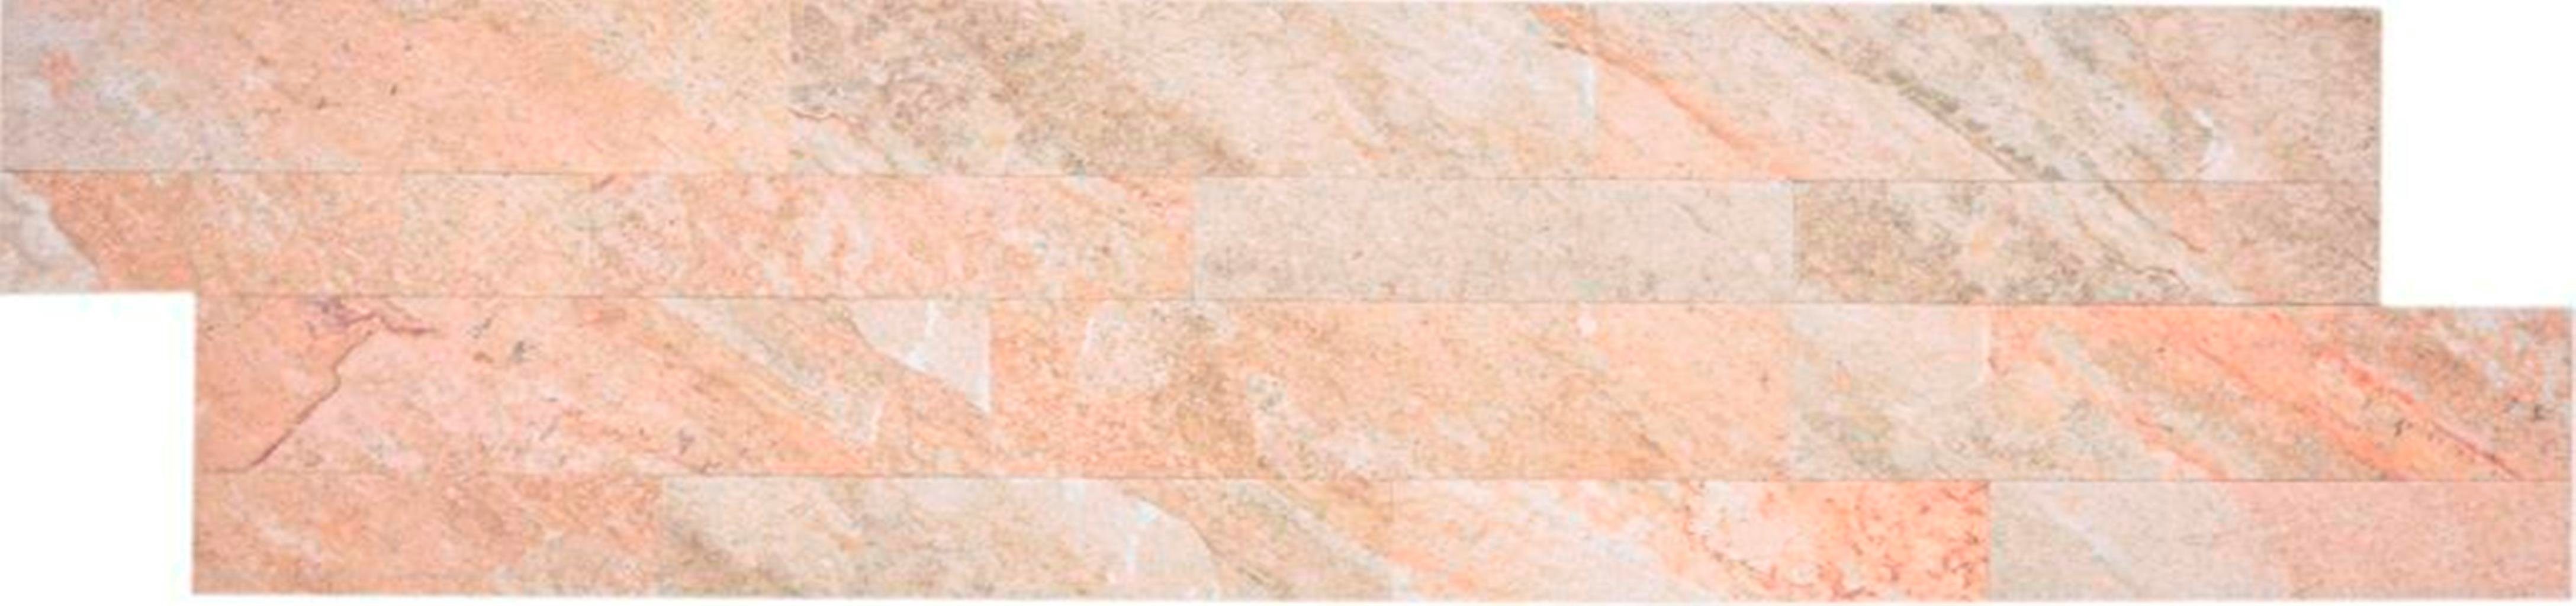 Mosani Wandpaneel 10x Verkleidungspaneele in Steinoptik selbstklebend Wanddekor, BxL: 15,20x61,00 cm, (Set, 10-teilig) Innenbereich Wand Decke Fliesenspiegel Küchenrückwand